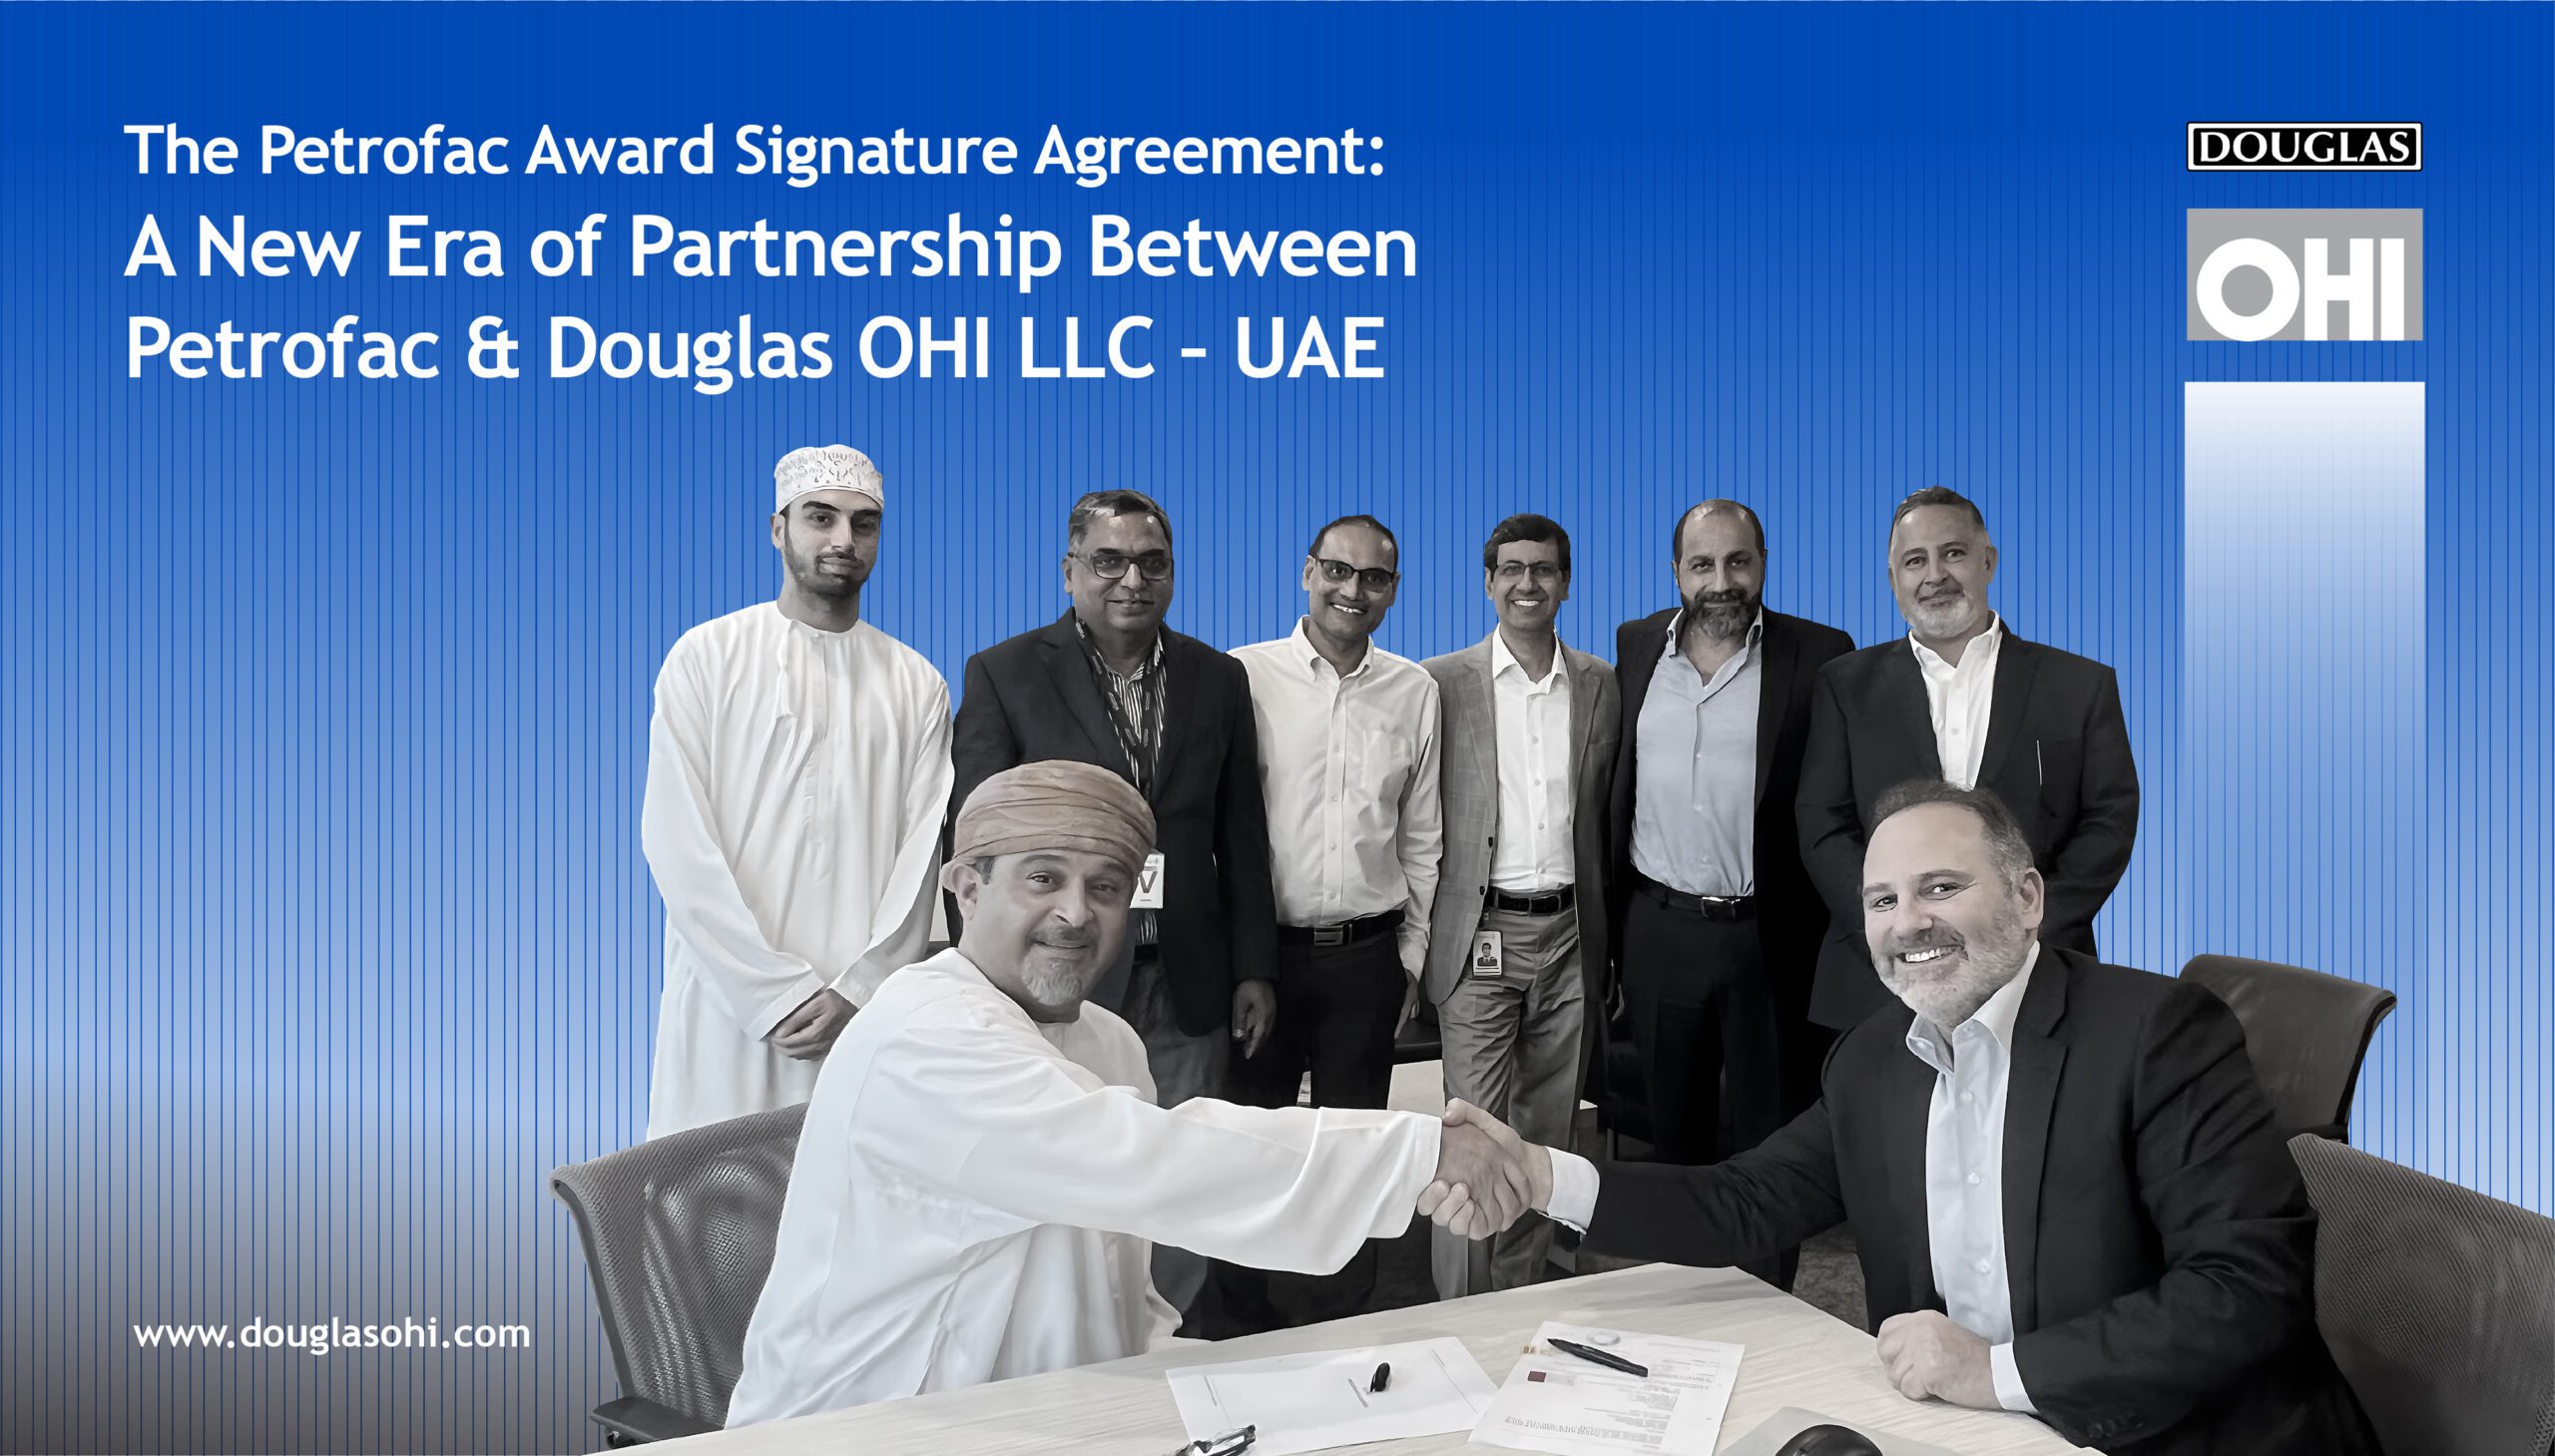 The Petrofac Award Signature Agreement: A New Era of Partnership Between Petrofac & Douglas OHI LLC – UAE